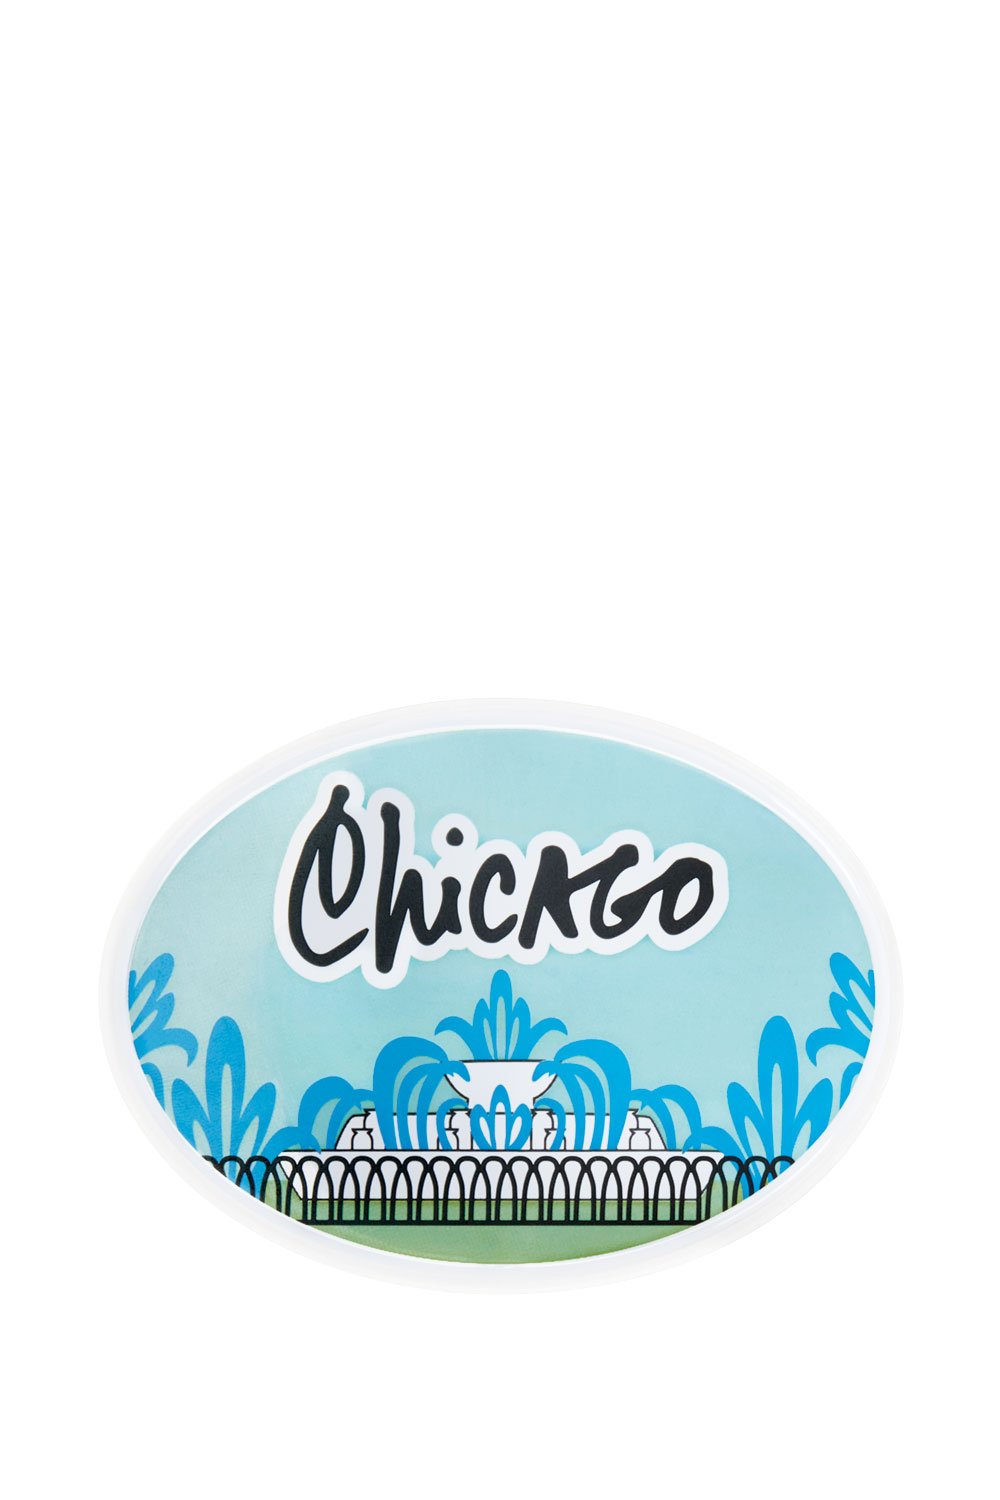 Travel Sticker Chicago